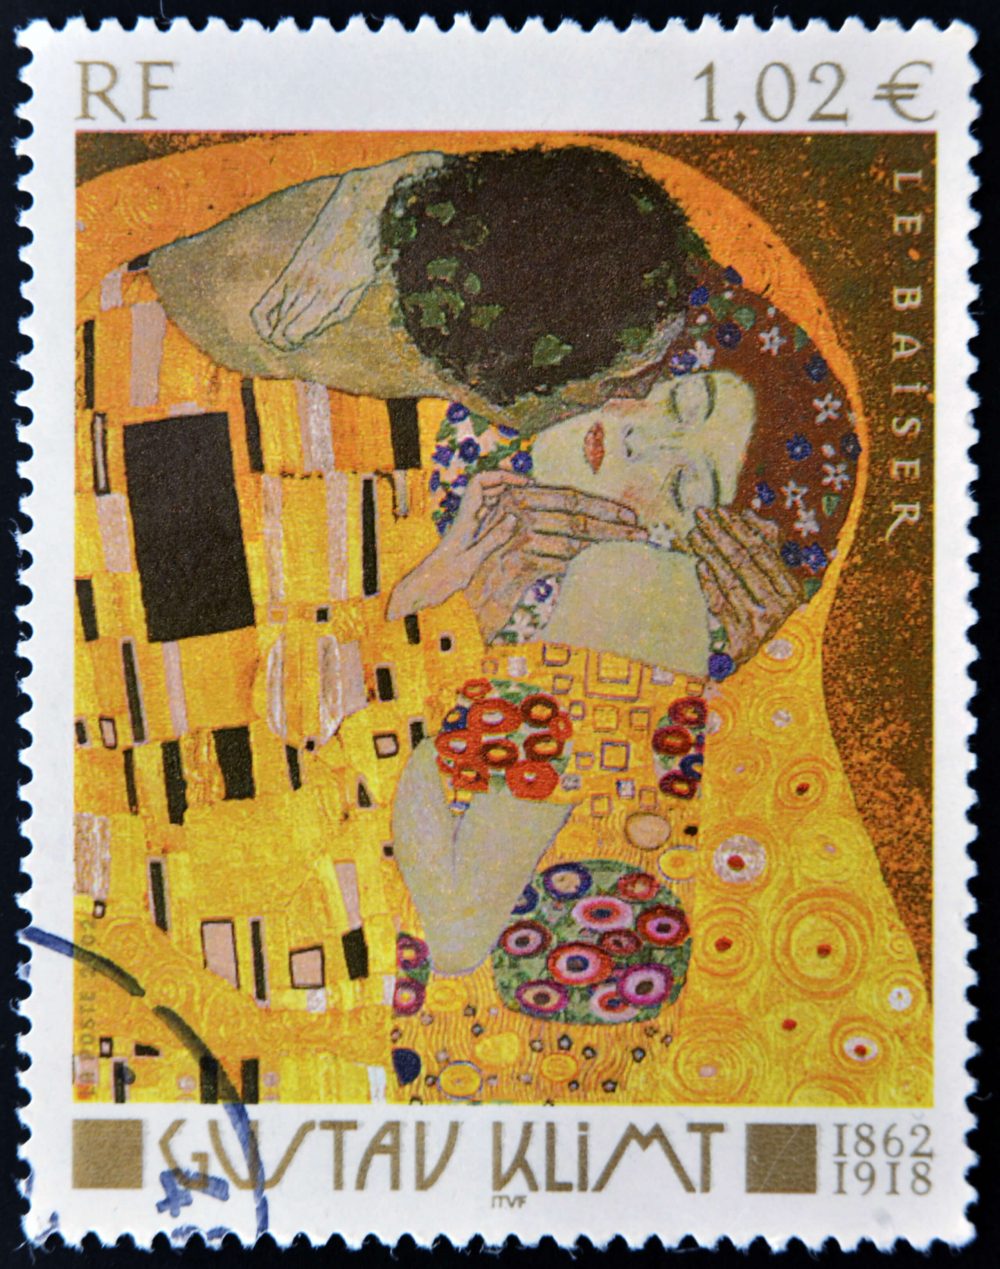 Gustav Klimt multimedial in Locarno erleben (Bild: neftali - shutterstock.com)